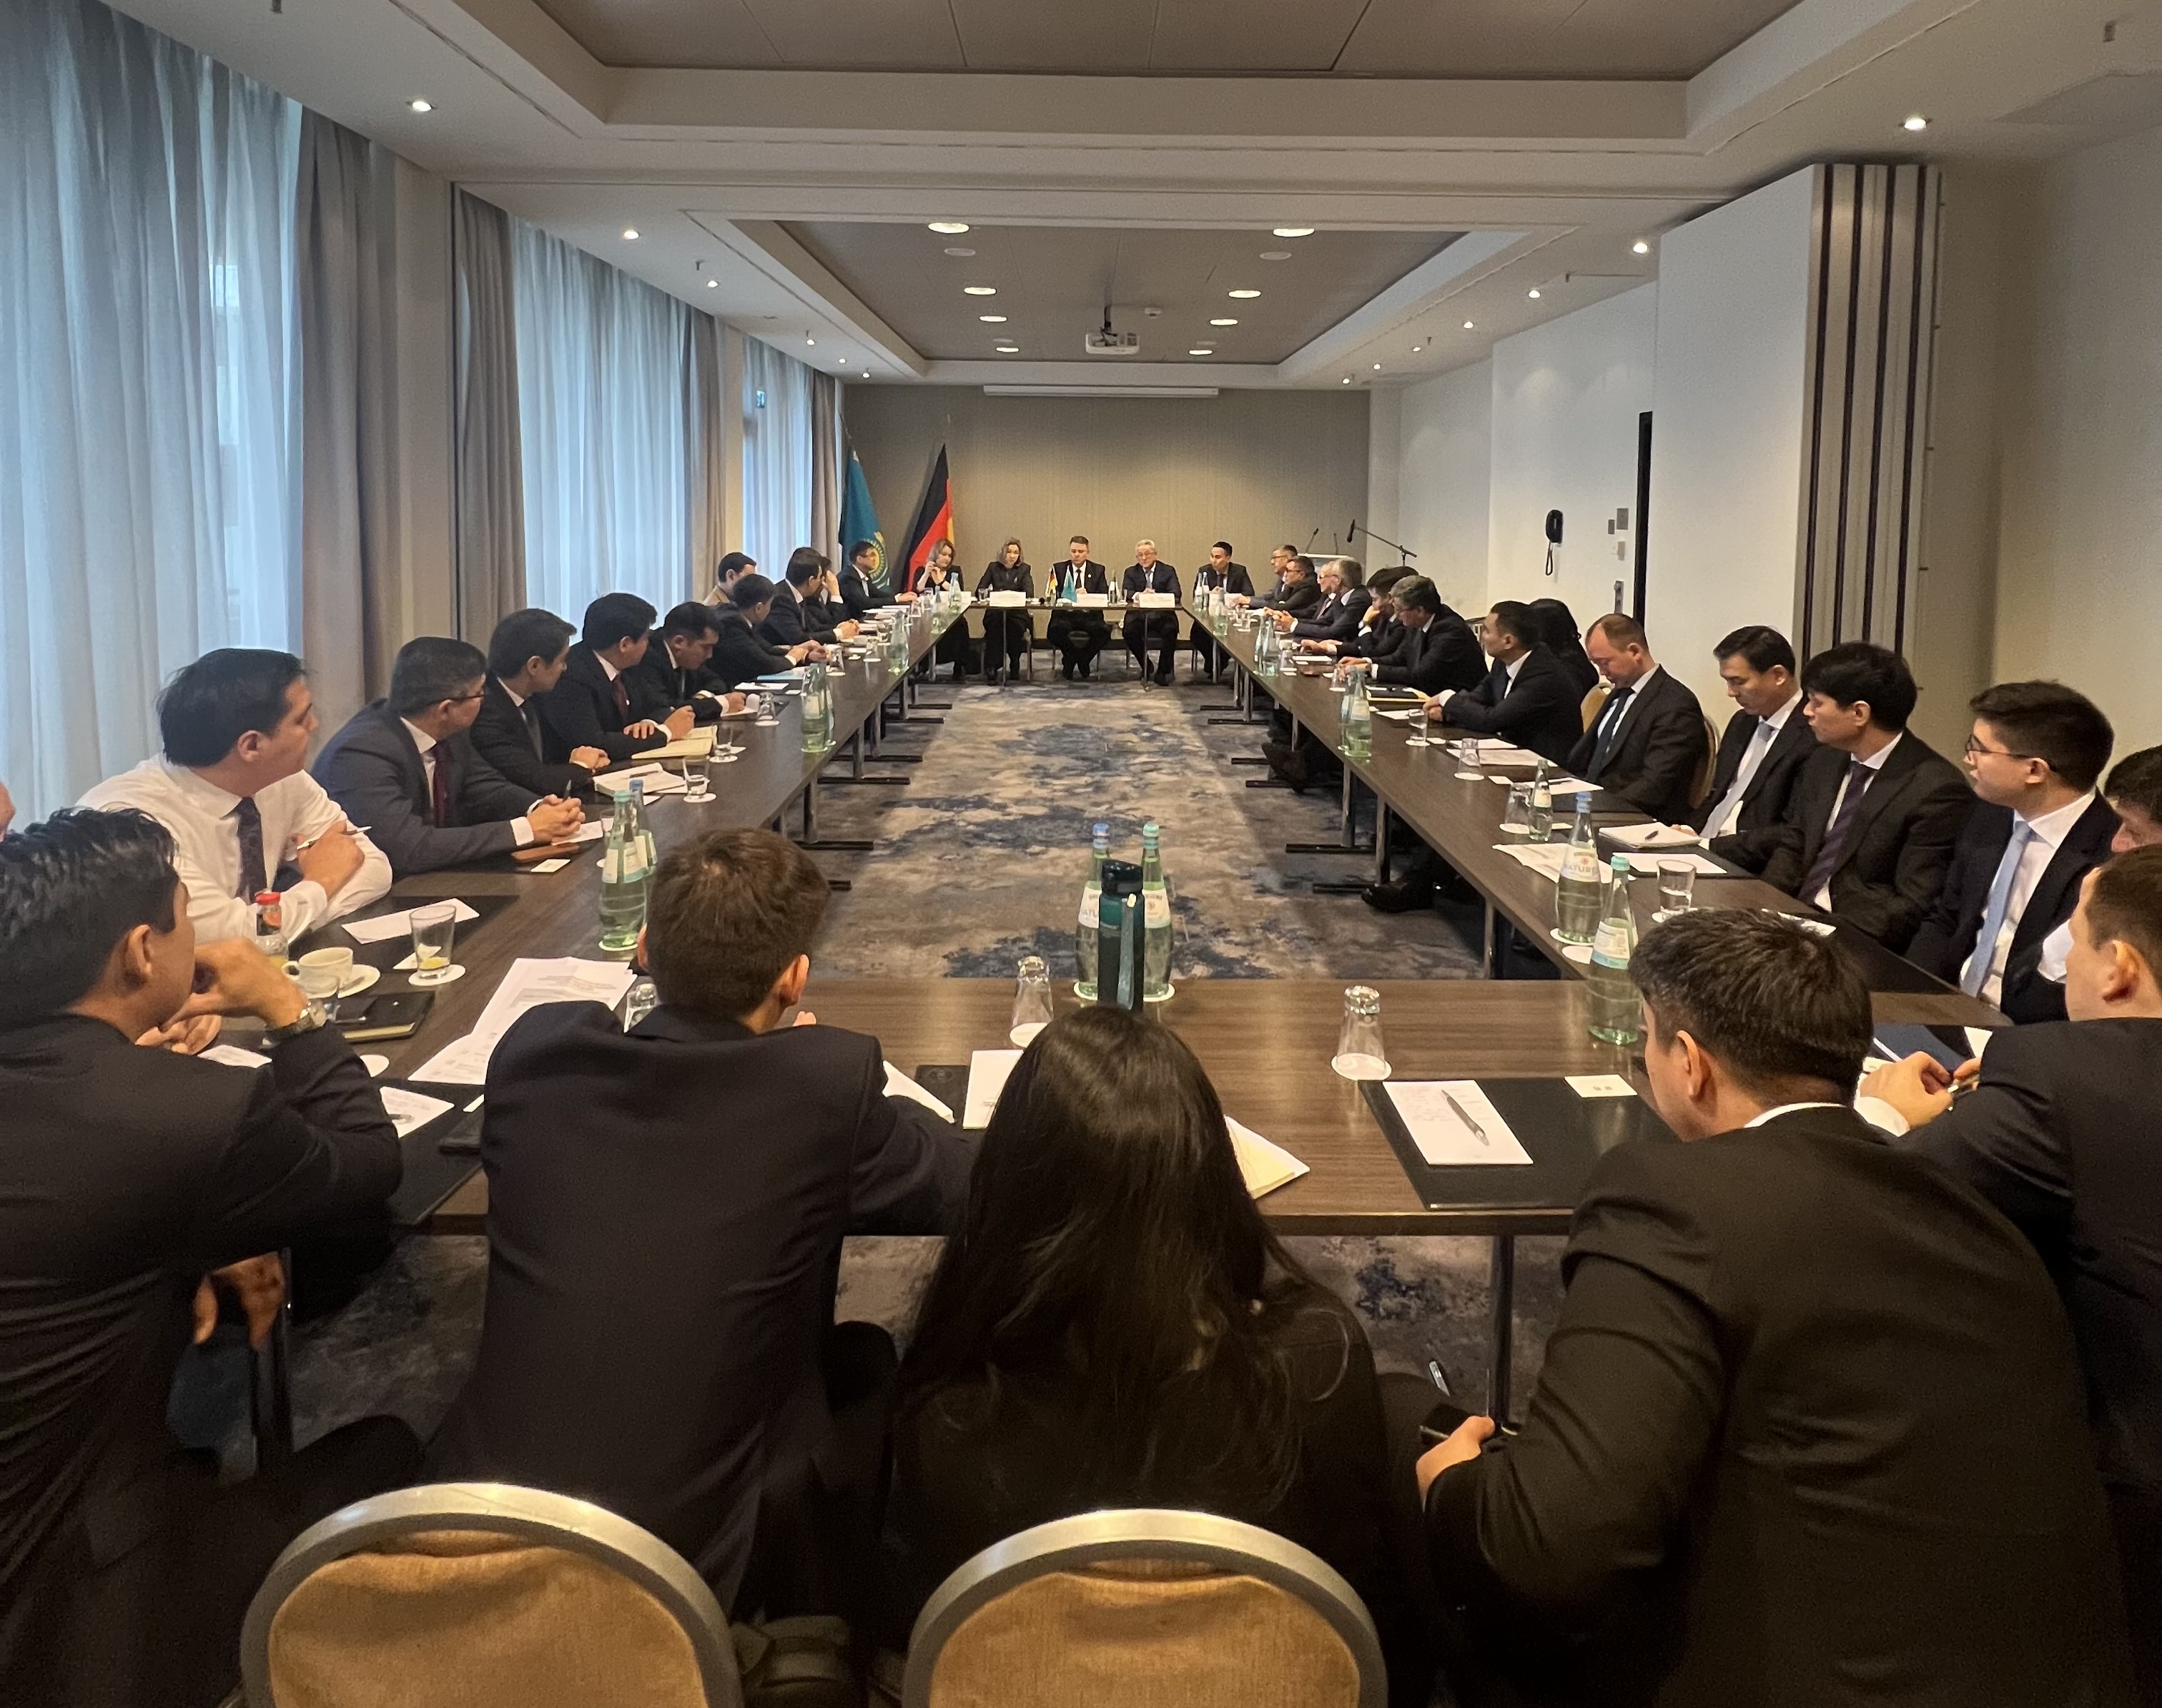 В г. Франкфурт-на-Майне состоялось выездное заседание государственных органов Республики Казахстан по консульским вопросам